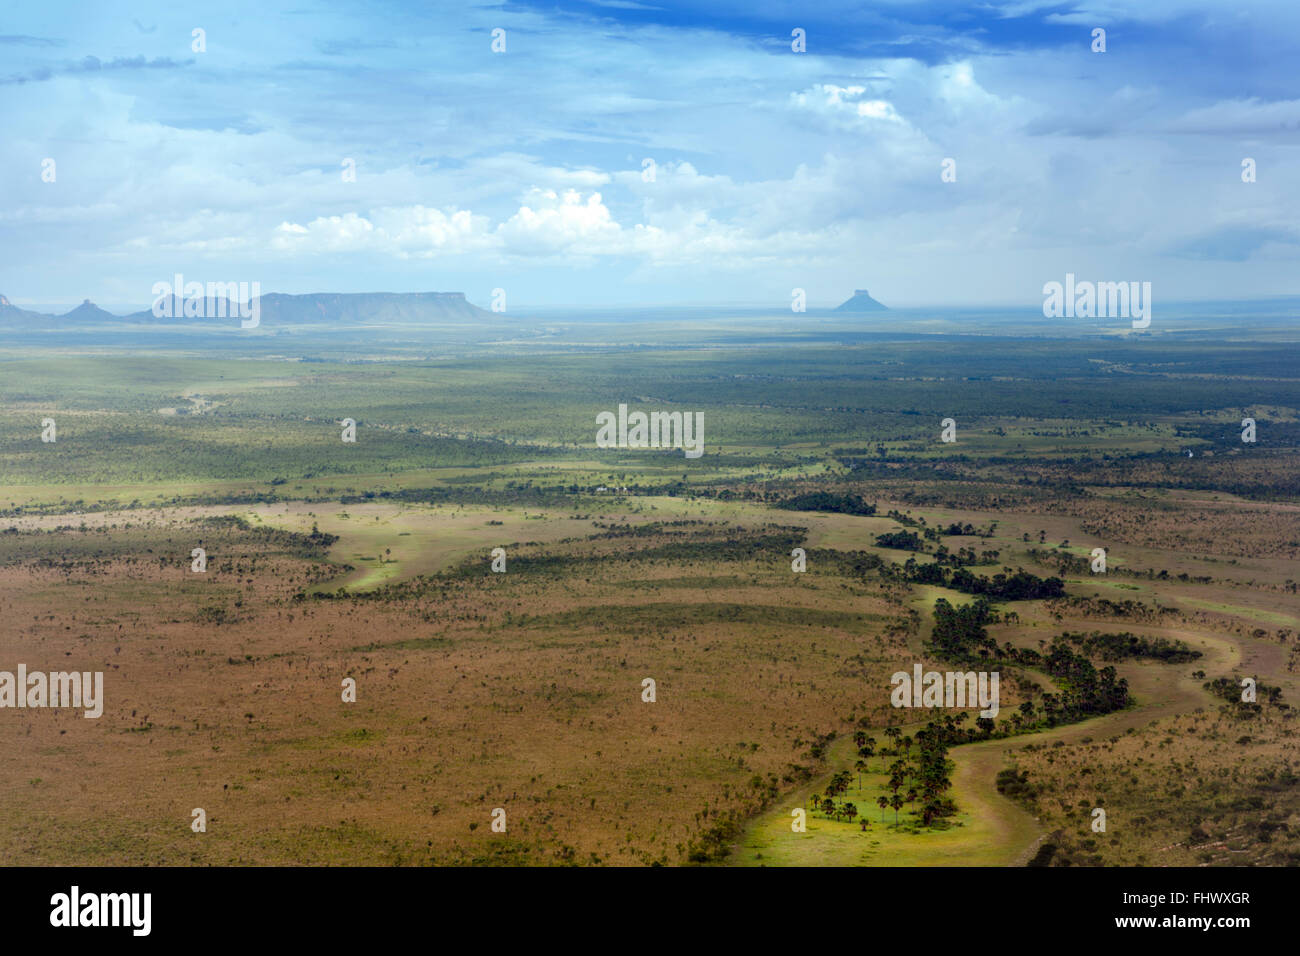 Cerrado scenery in Jalapao, Tocantins, in the interior of Brazil Stock Photo